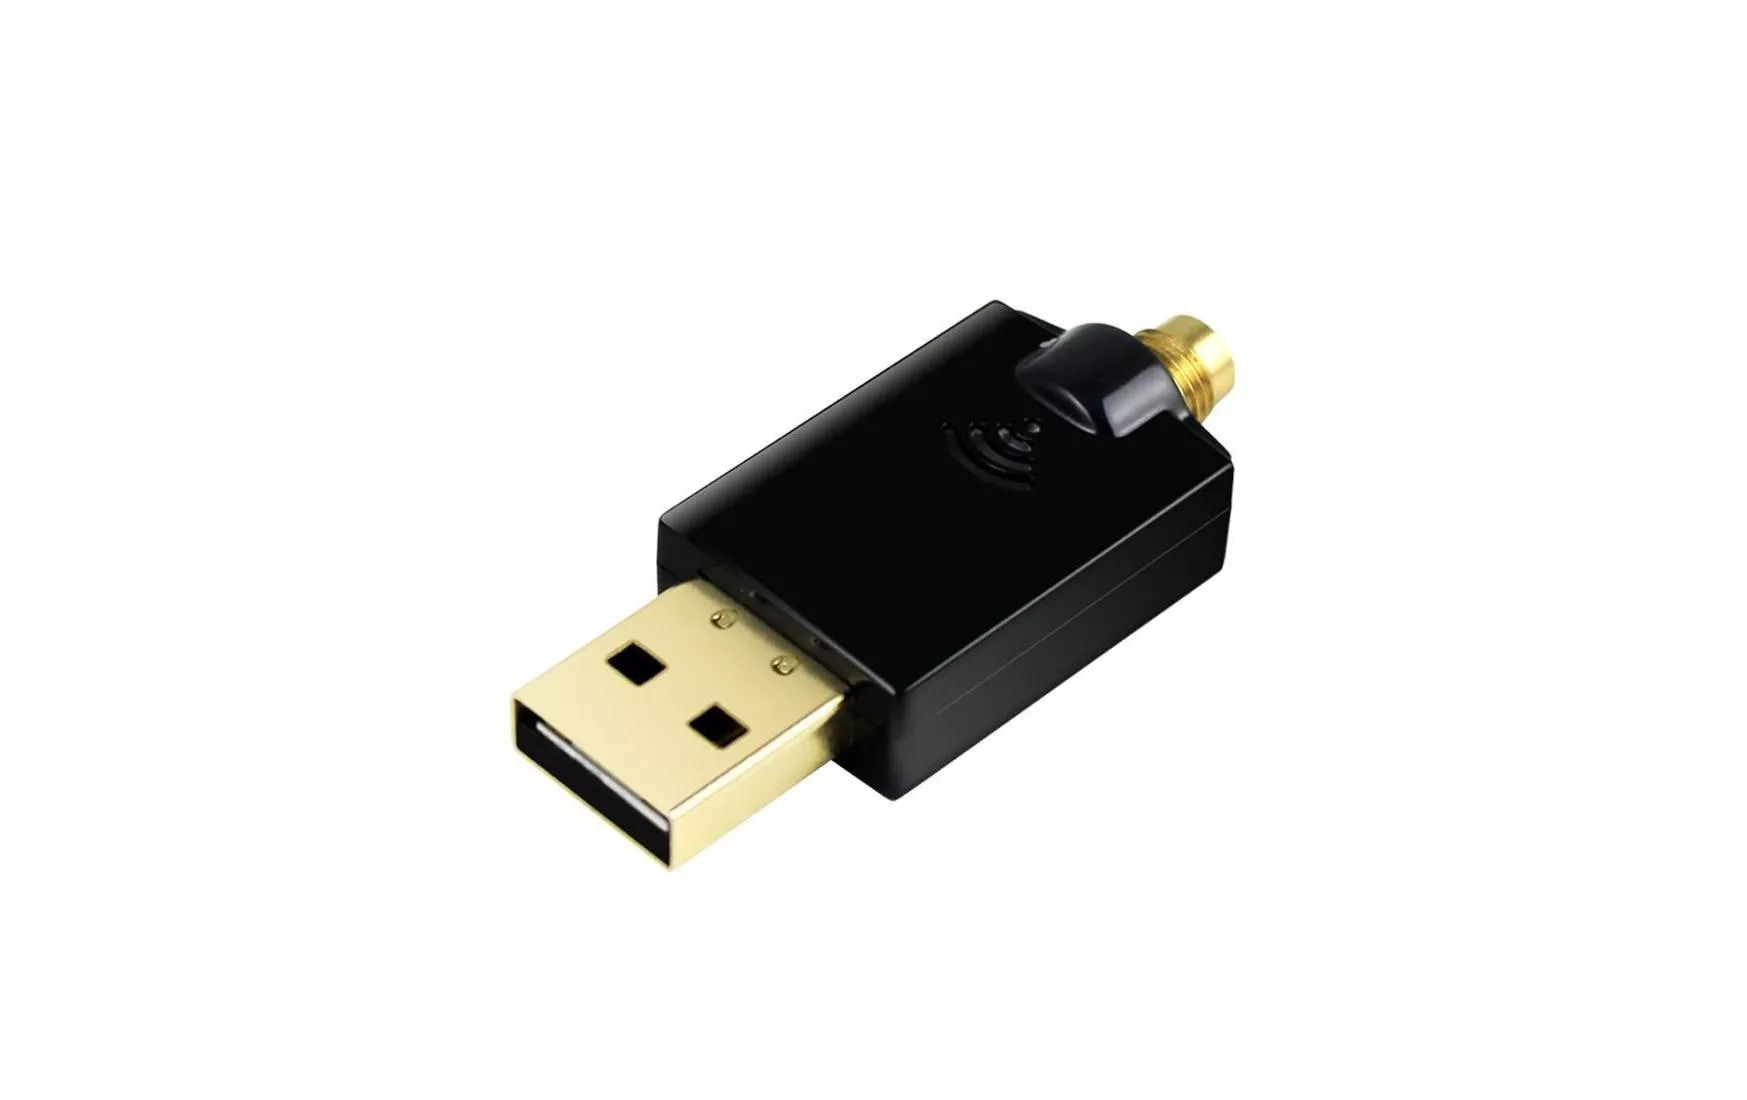 CE Adaptateur WiFi USB pour TechniSat, Dreambox, VU+ 300 Mbps